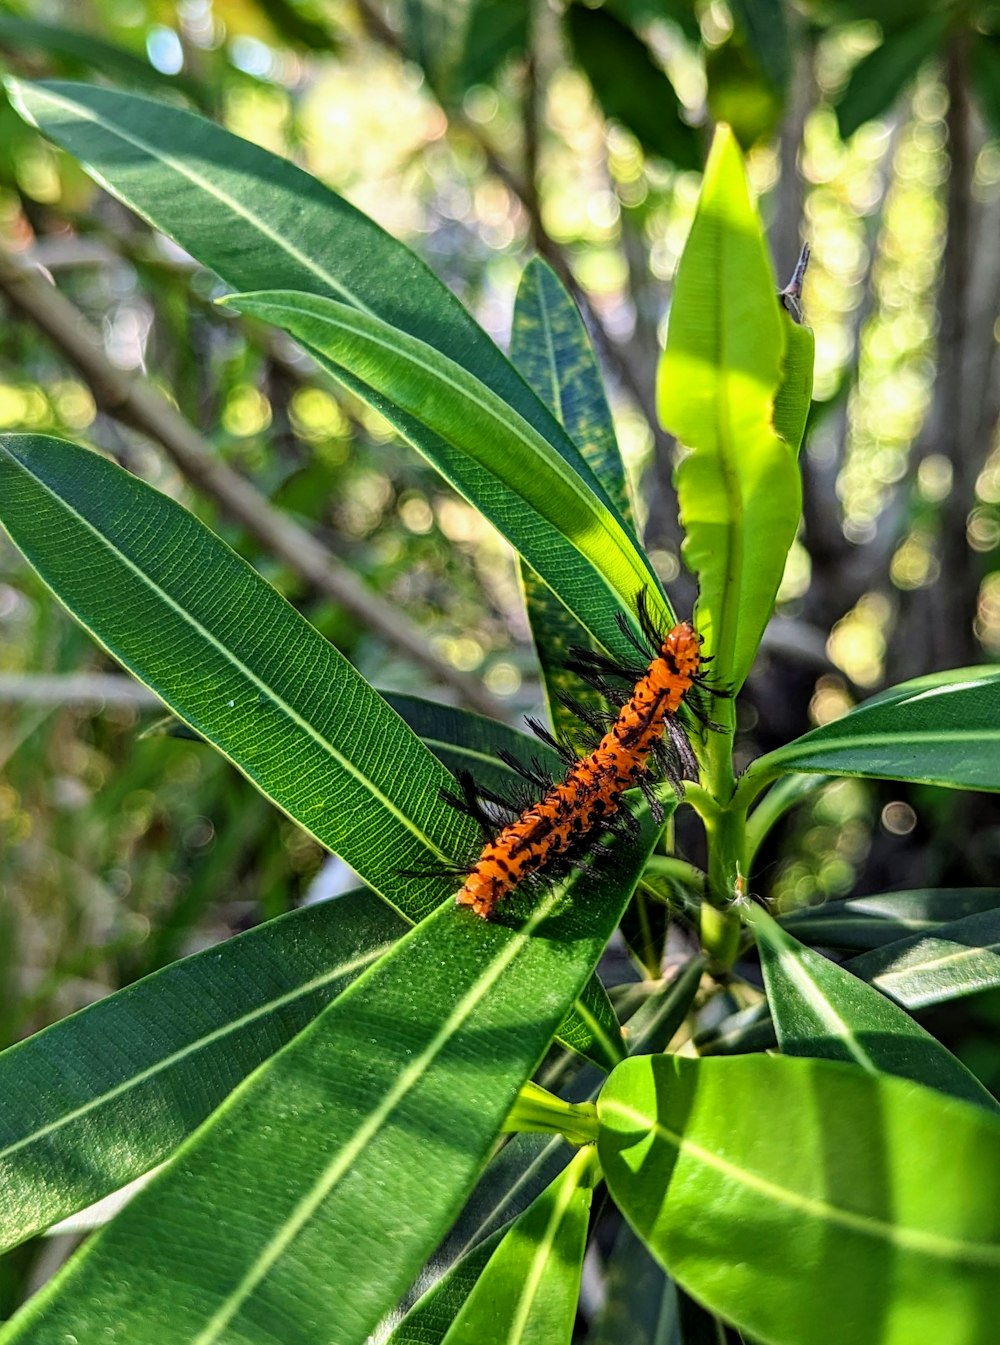 an orange caterpillar crawling on a green leaf